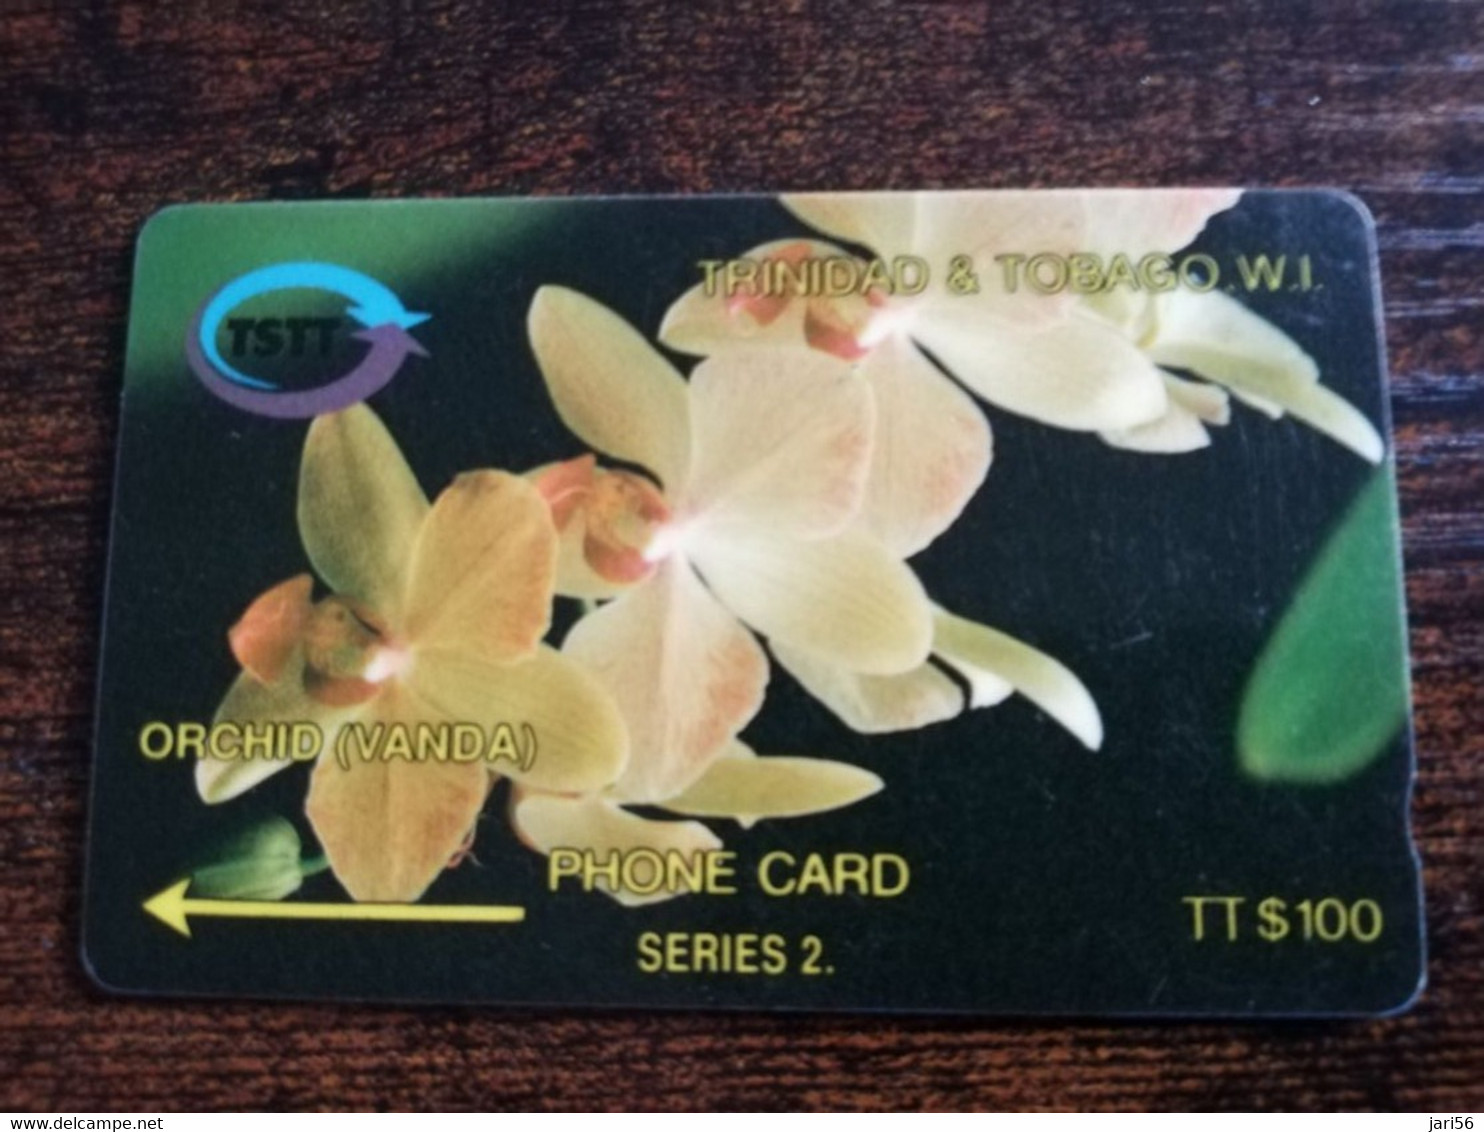 TRINIDAD & TOBAGO  GPT CARD    $100,-  6CCTD   ORCHID VANDA        Fine Used Card        ** 8867** - Trinidad & Tobago